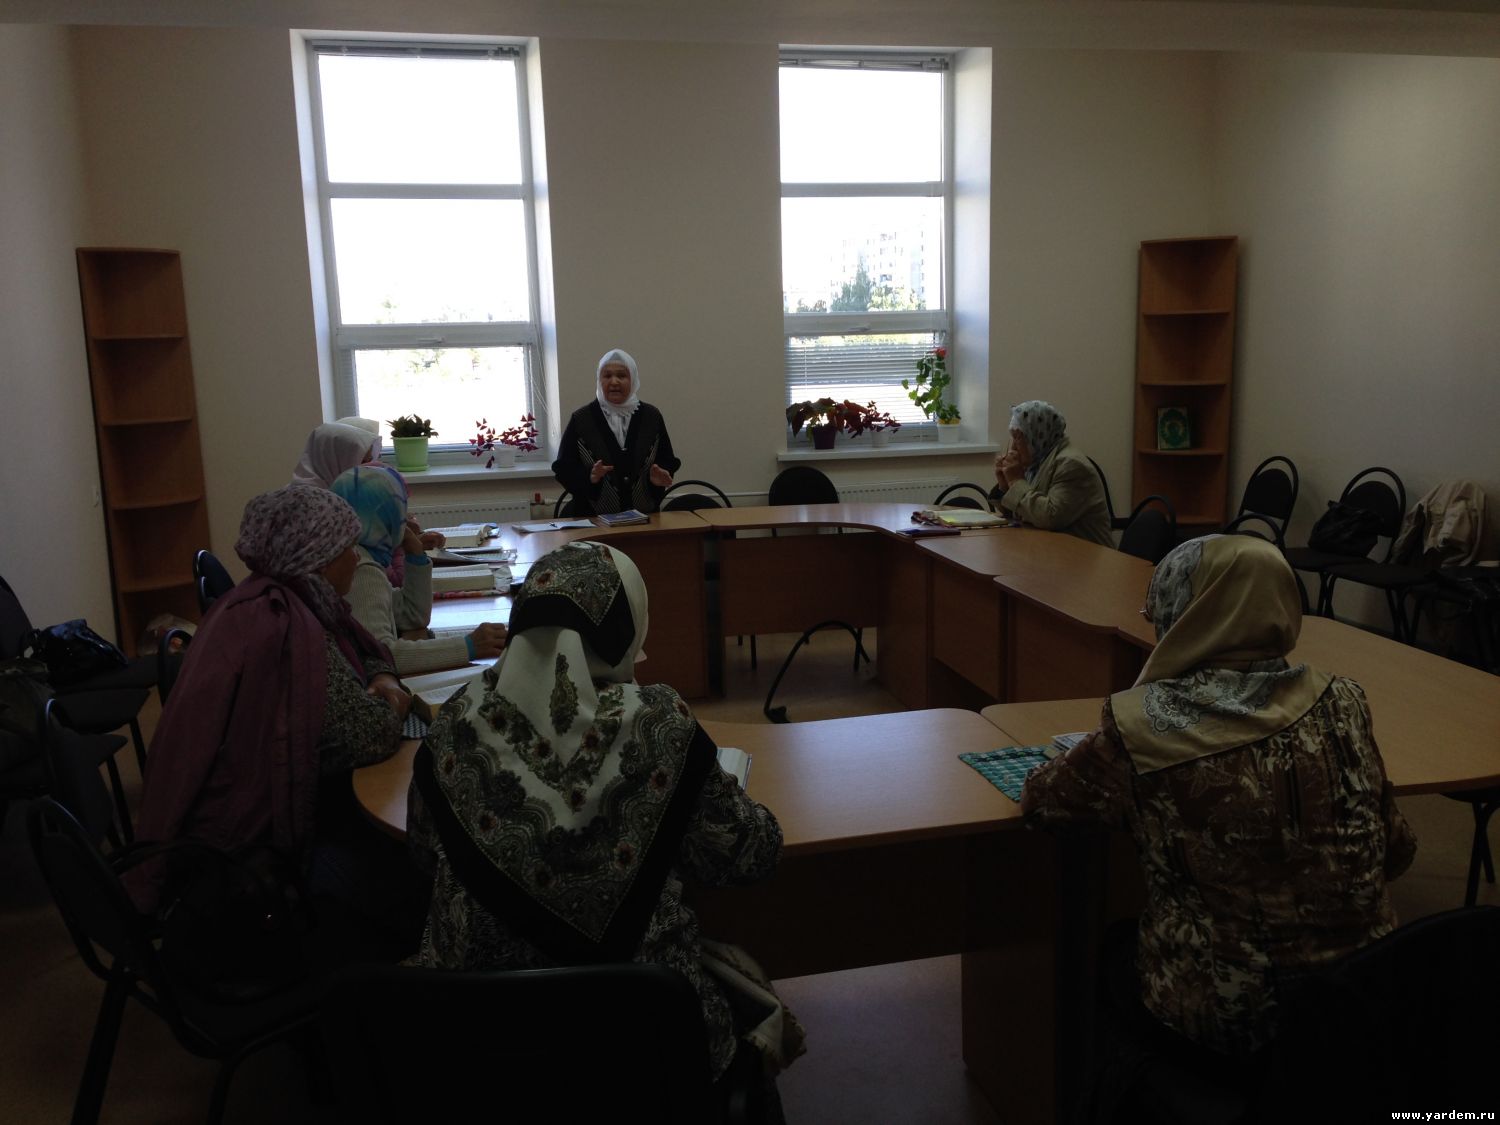 В мечети "Ярдэм" начались курсы для  женщин по изучению Корана. Курсы по заучиванию Корана